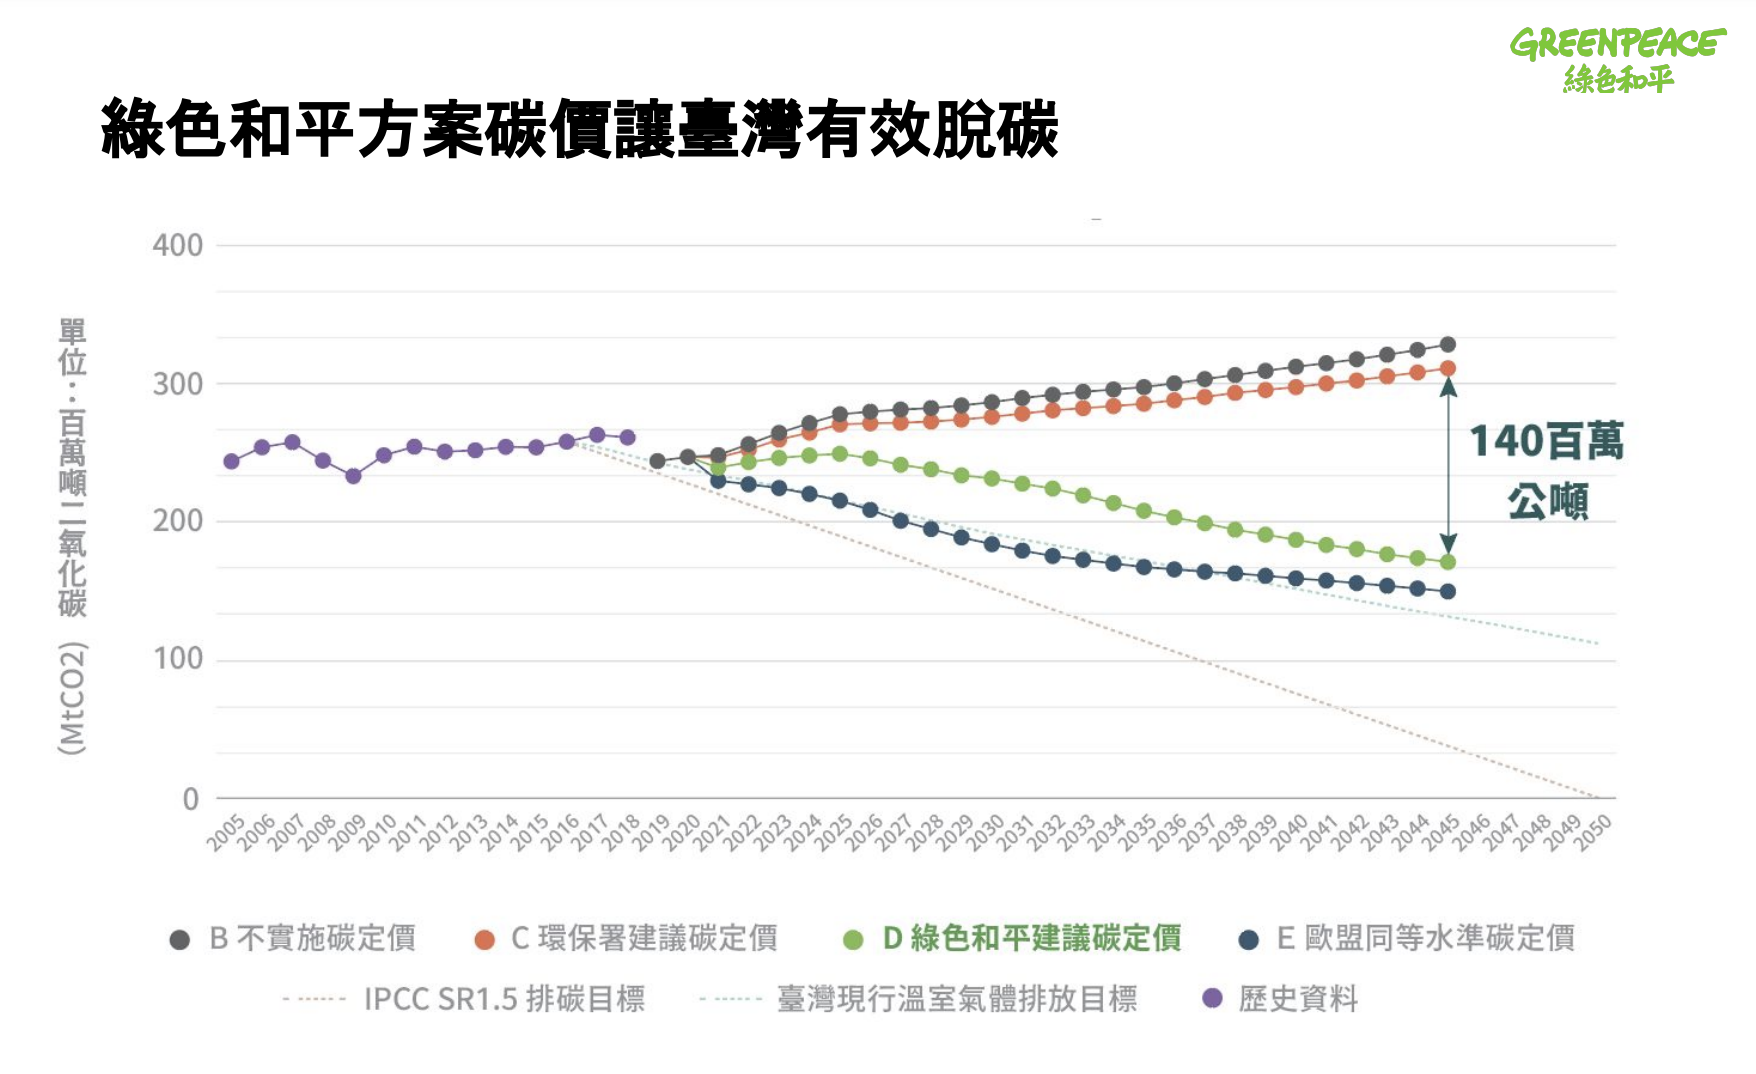 綠色和平提出應以每噸300元為下限徵收碳費，並逐年調升至少10%，才能有效邁向2050淨零並且維持臺灣產業競爭力。